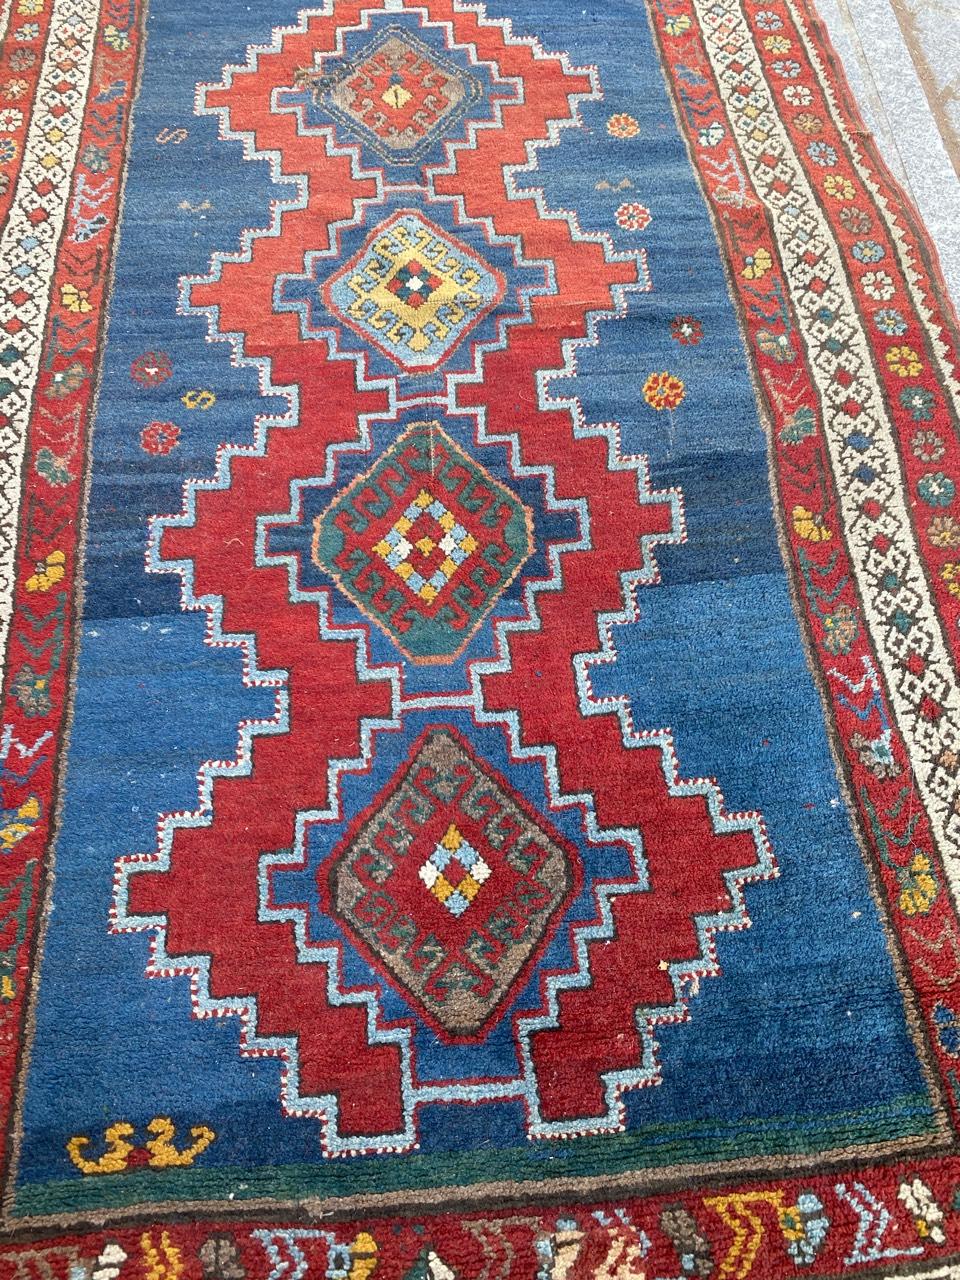 19th Century Antique Caucasian Kazak Rug